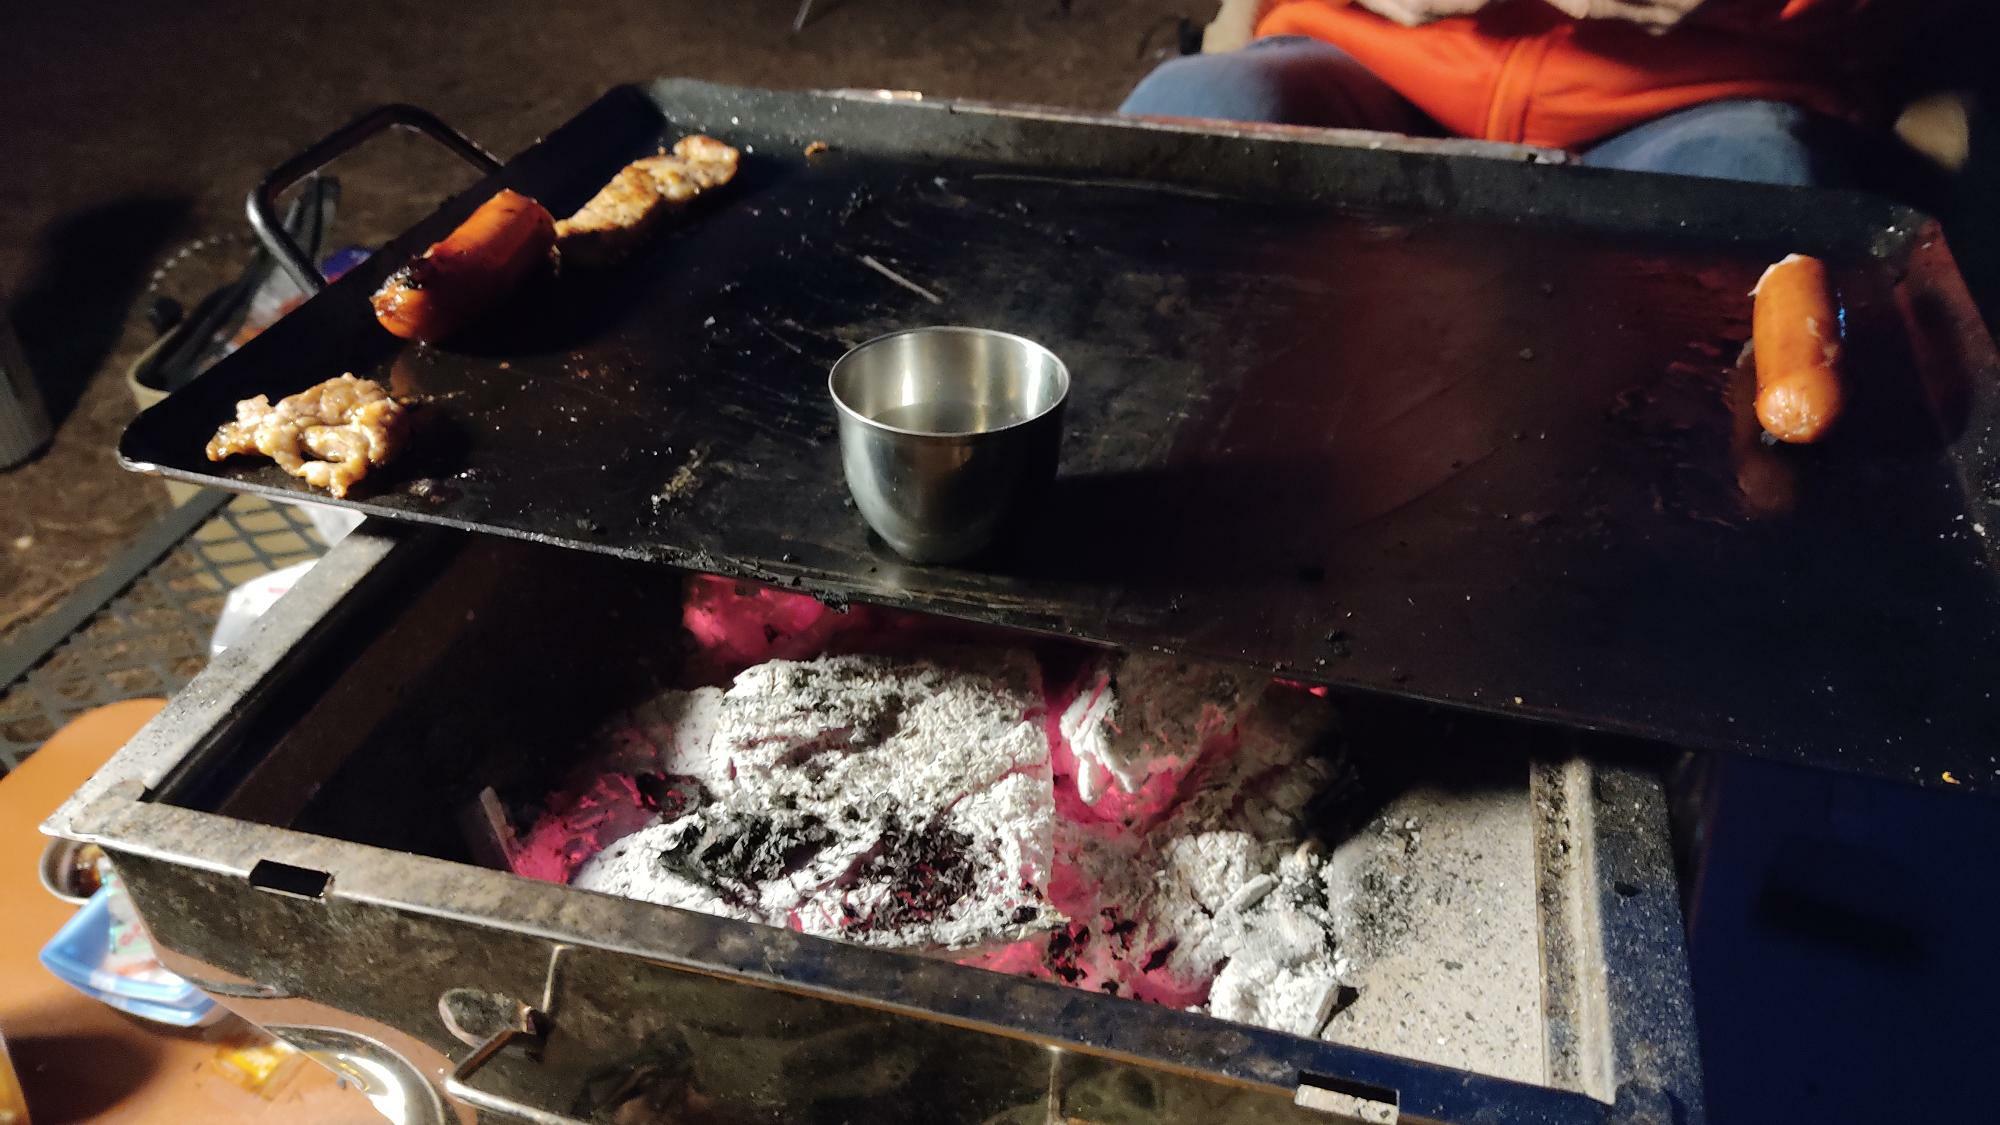 BBQには欠かせない炭は調理にも暖房にも使えて便利